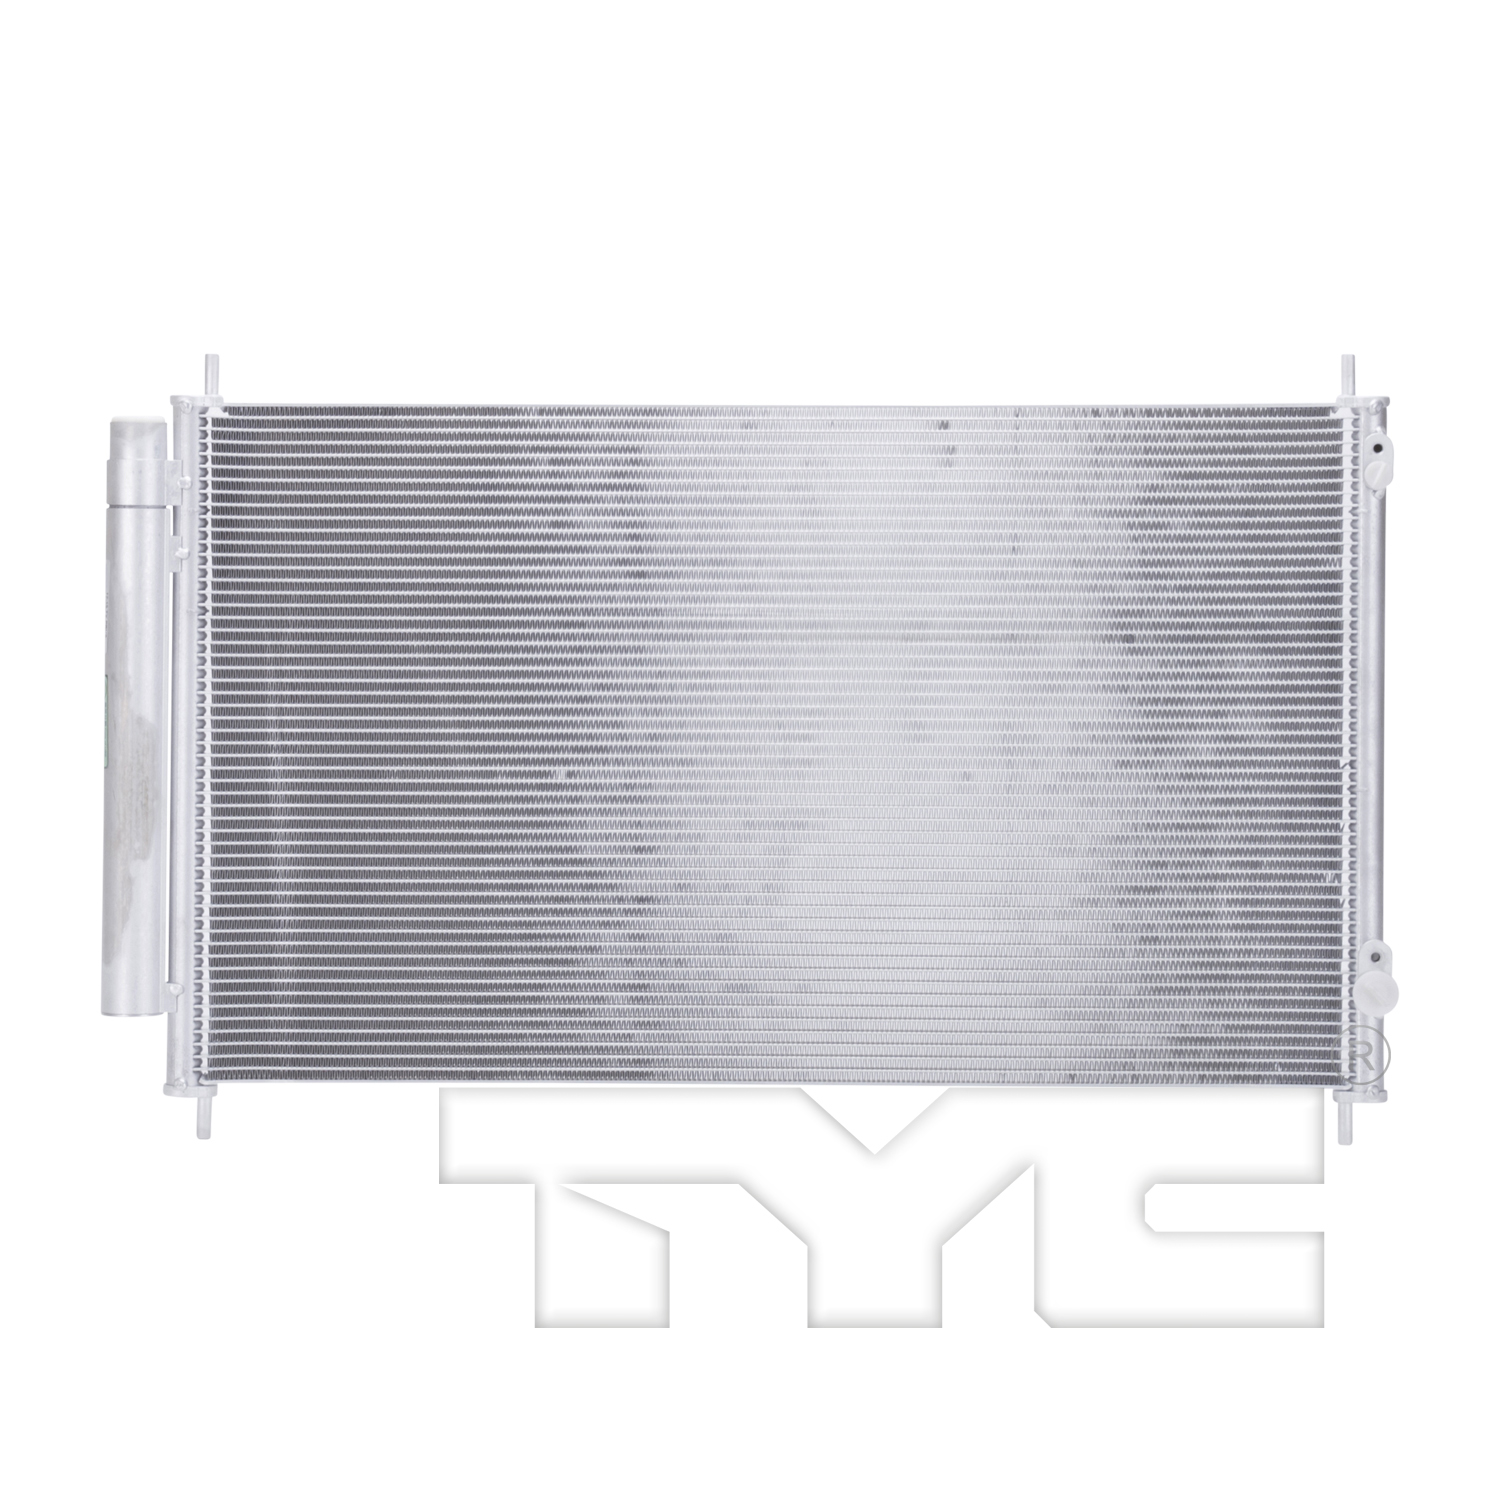 Aftermarket AC CONDENSERS for TOYOTA - PRIUS C, PRIUS c,12-19,Air conditioning condenser